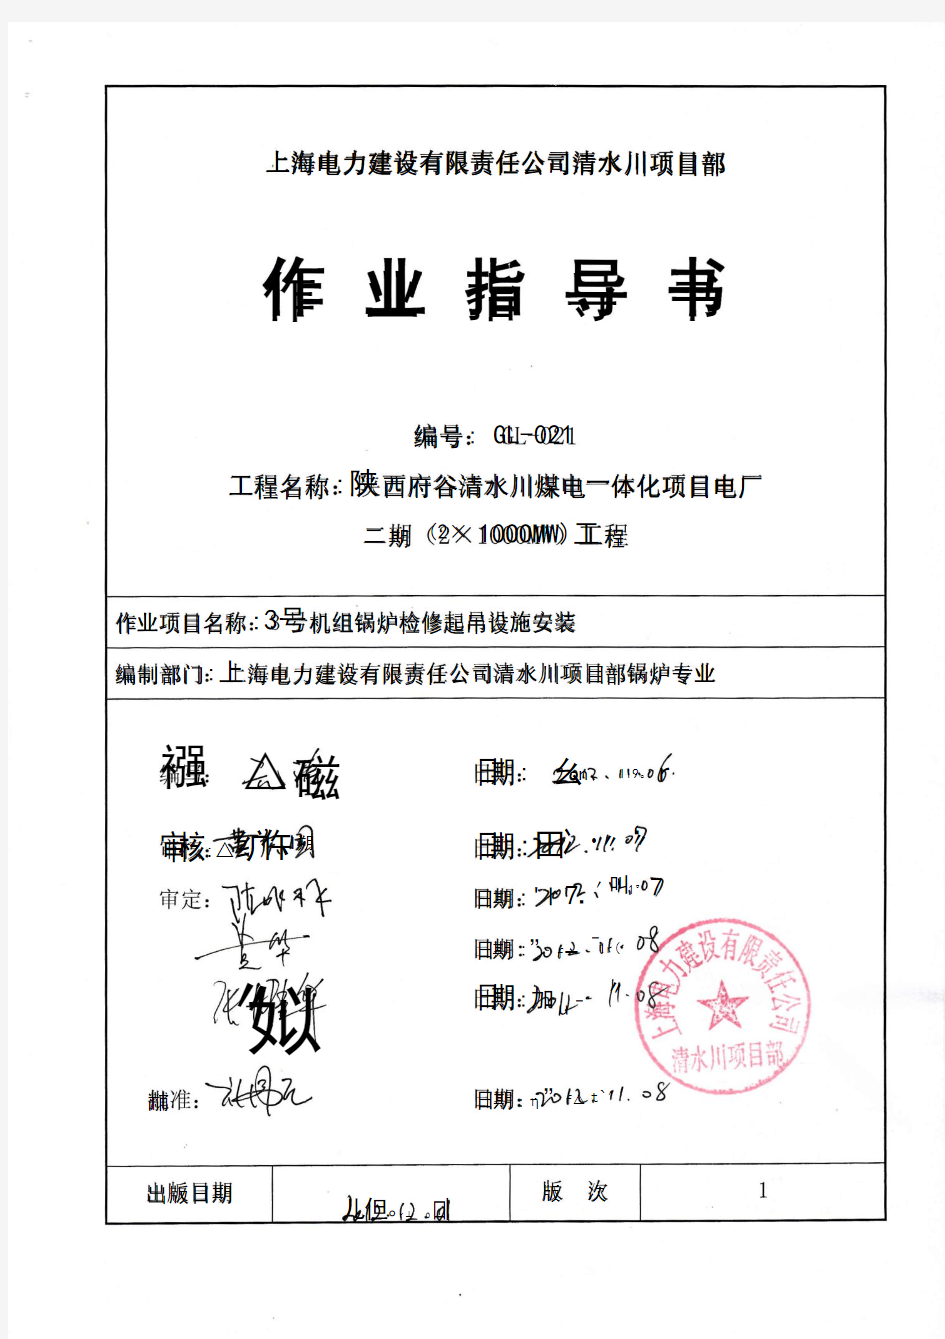 GL-021 锅炉房检修起吊设施作业指导书(清水川电厂)